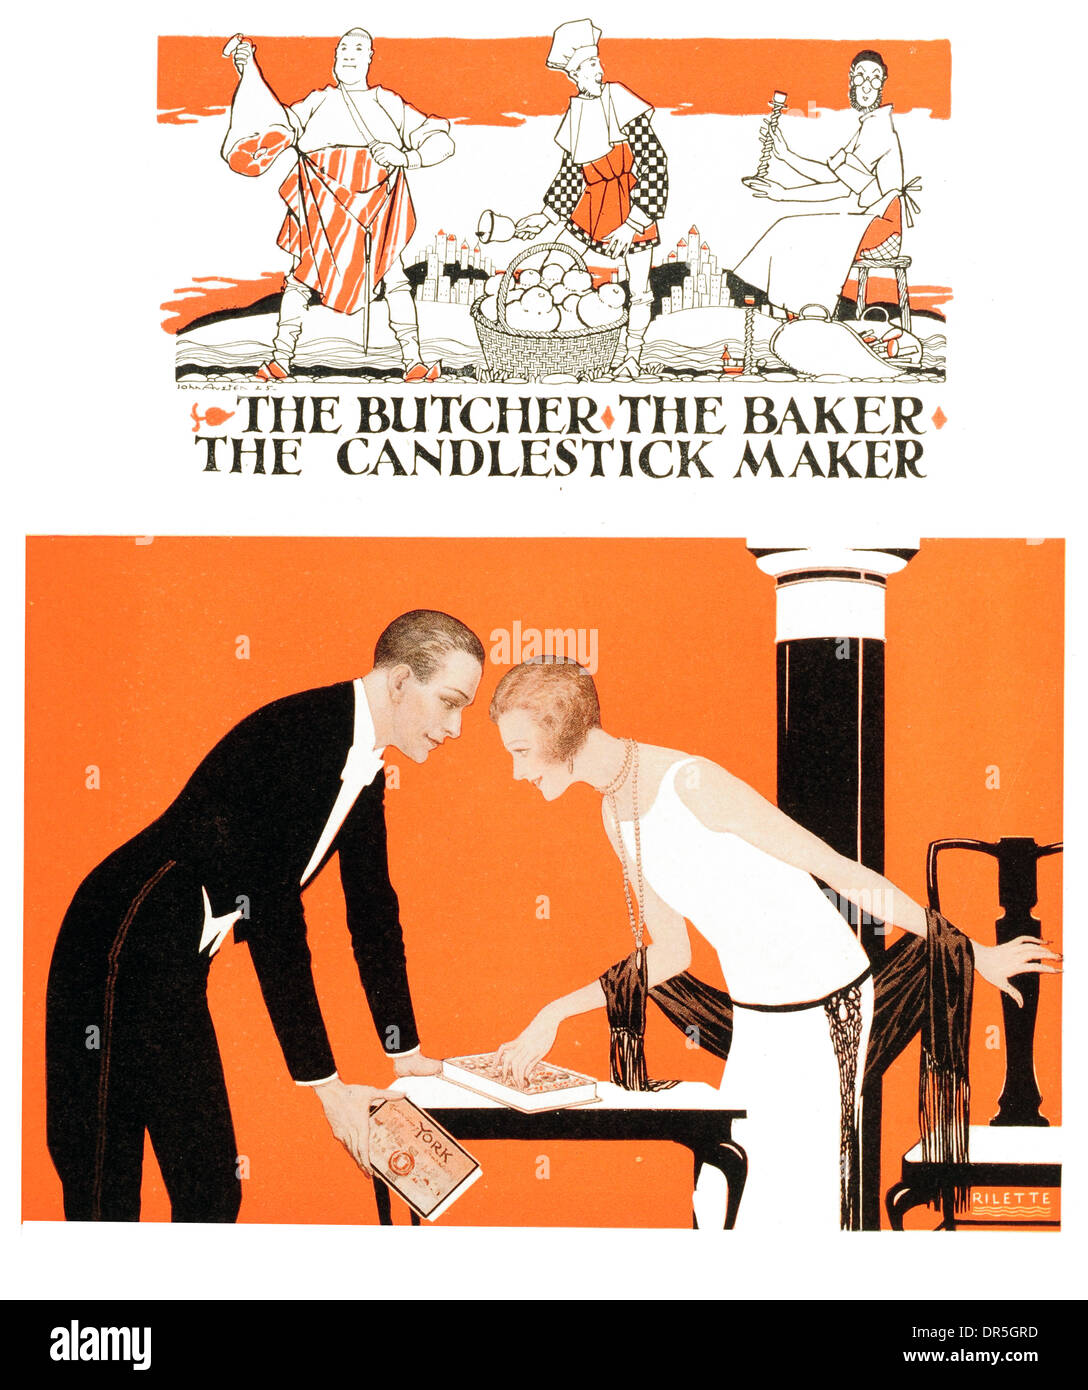 Stampa britannica Pubblicità Il macellaio Baker candela stick maker progettato per Allied quotidiani Ltd da John Austen progettato Foto Stock